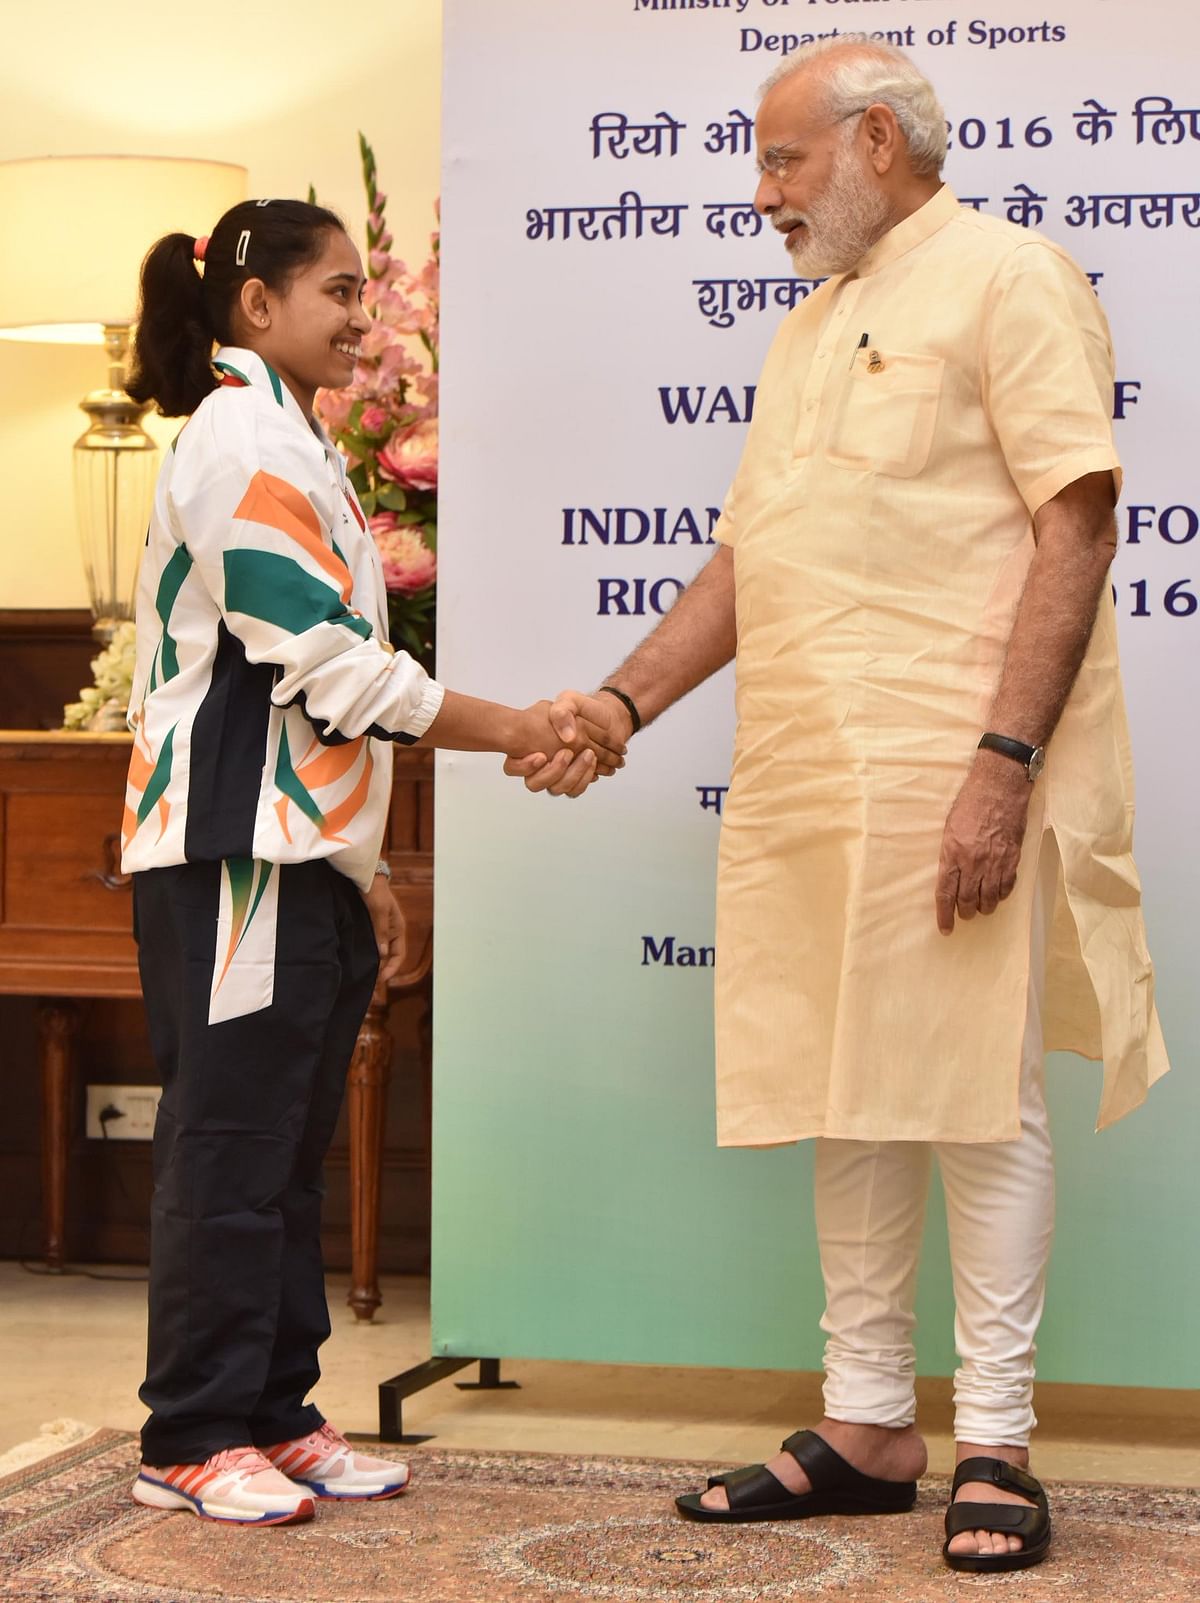 दीपा ने साढ़े पांच साल की उम्र से ही जिमनास्टिक शुरू कर दिया था